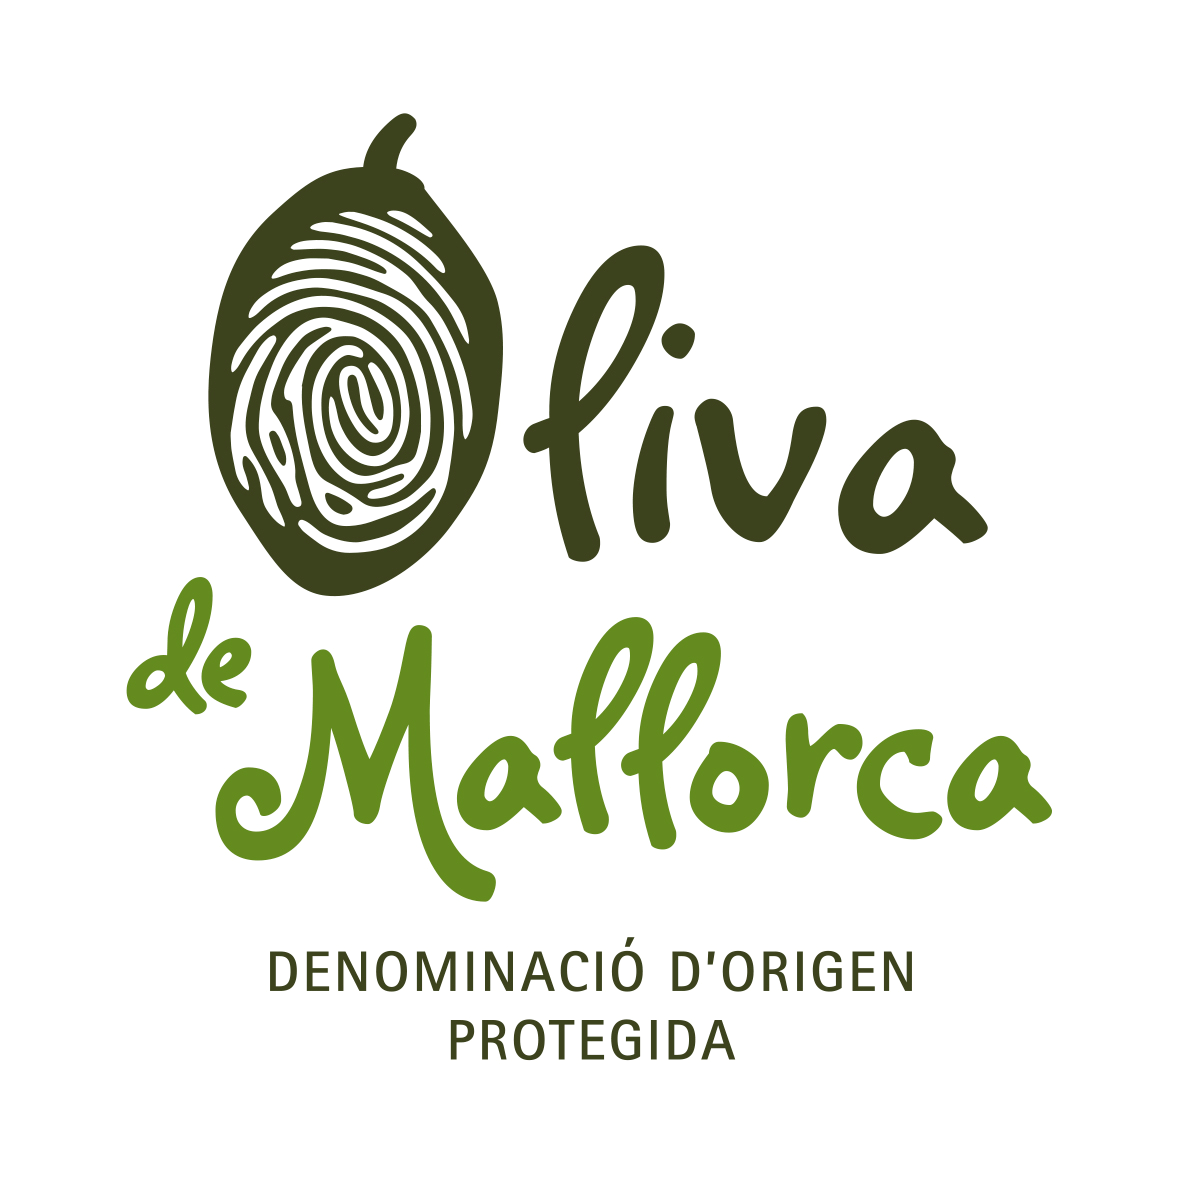 A l’any 2021 es comercialitzaren 24.500 kg d’Oliva de Mallorca - Notícies - Illes Balears - Productes agroalimentaris, denominacions d'origen i gastronomia balear